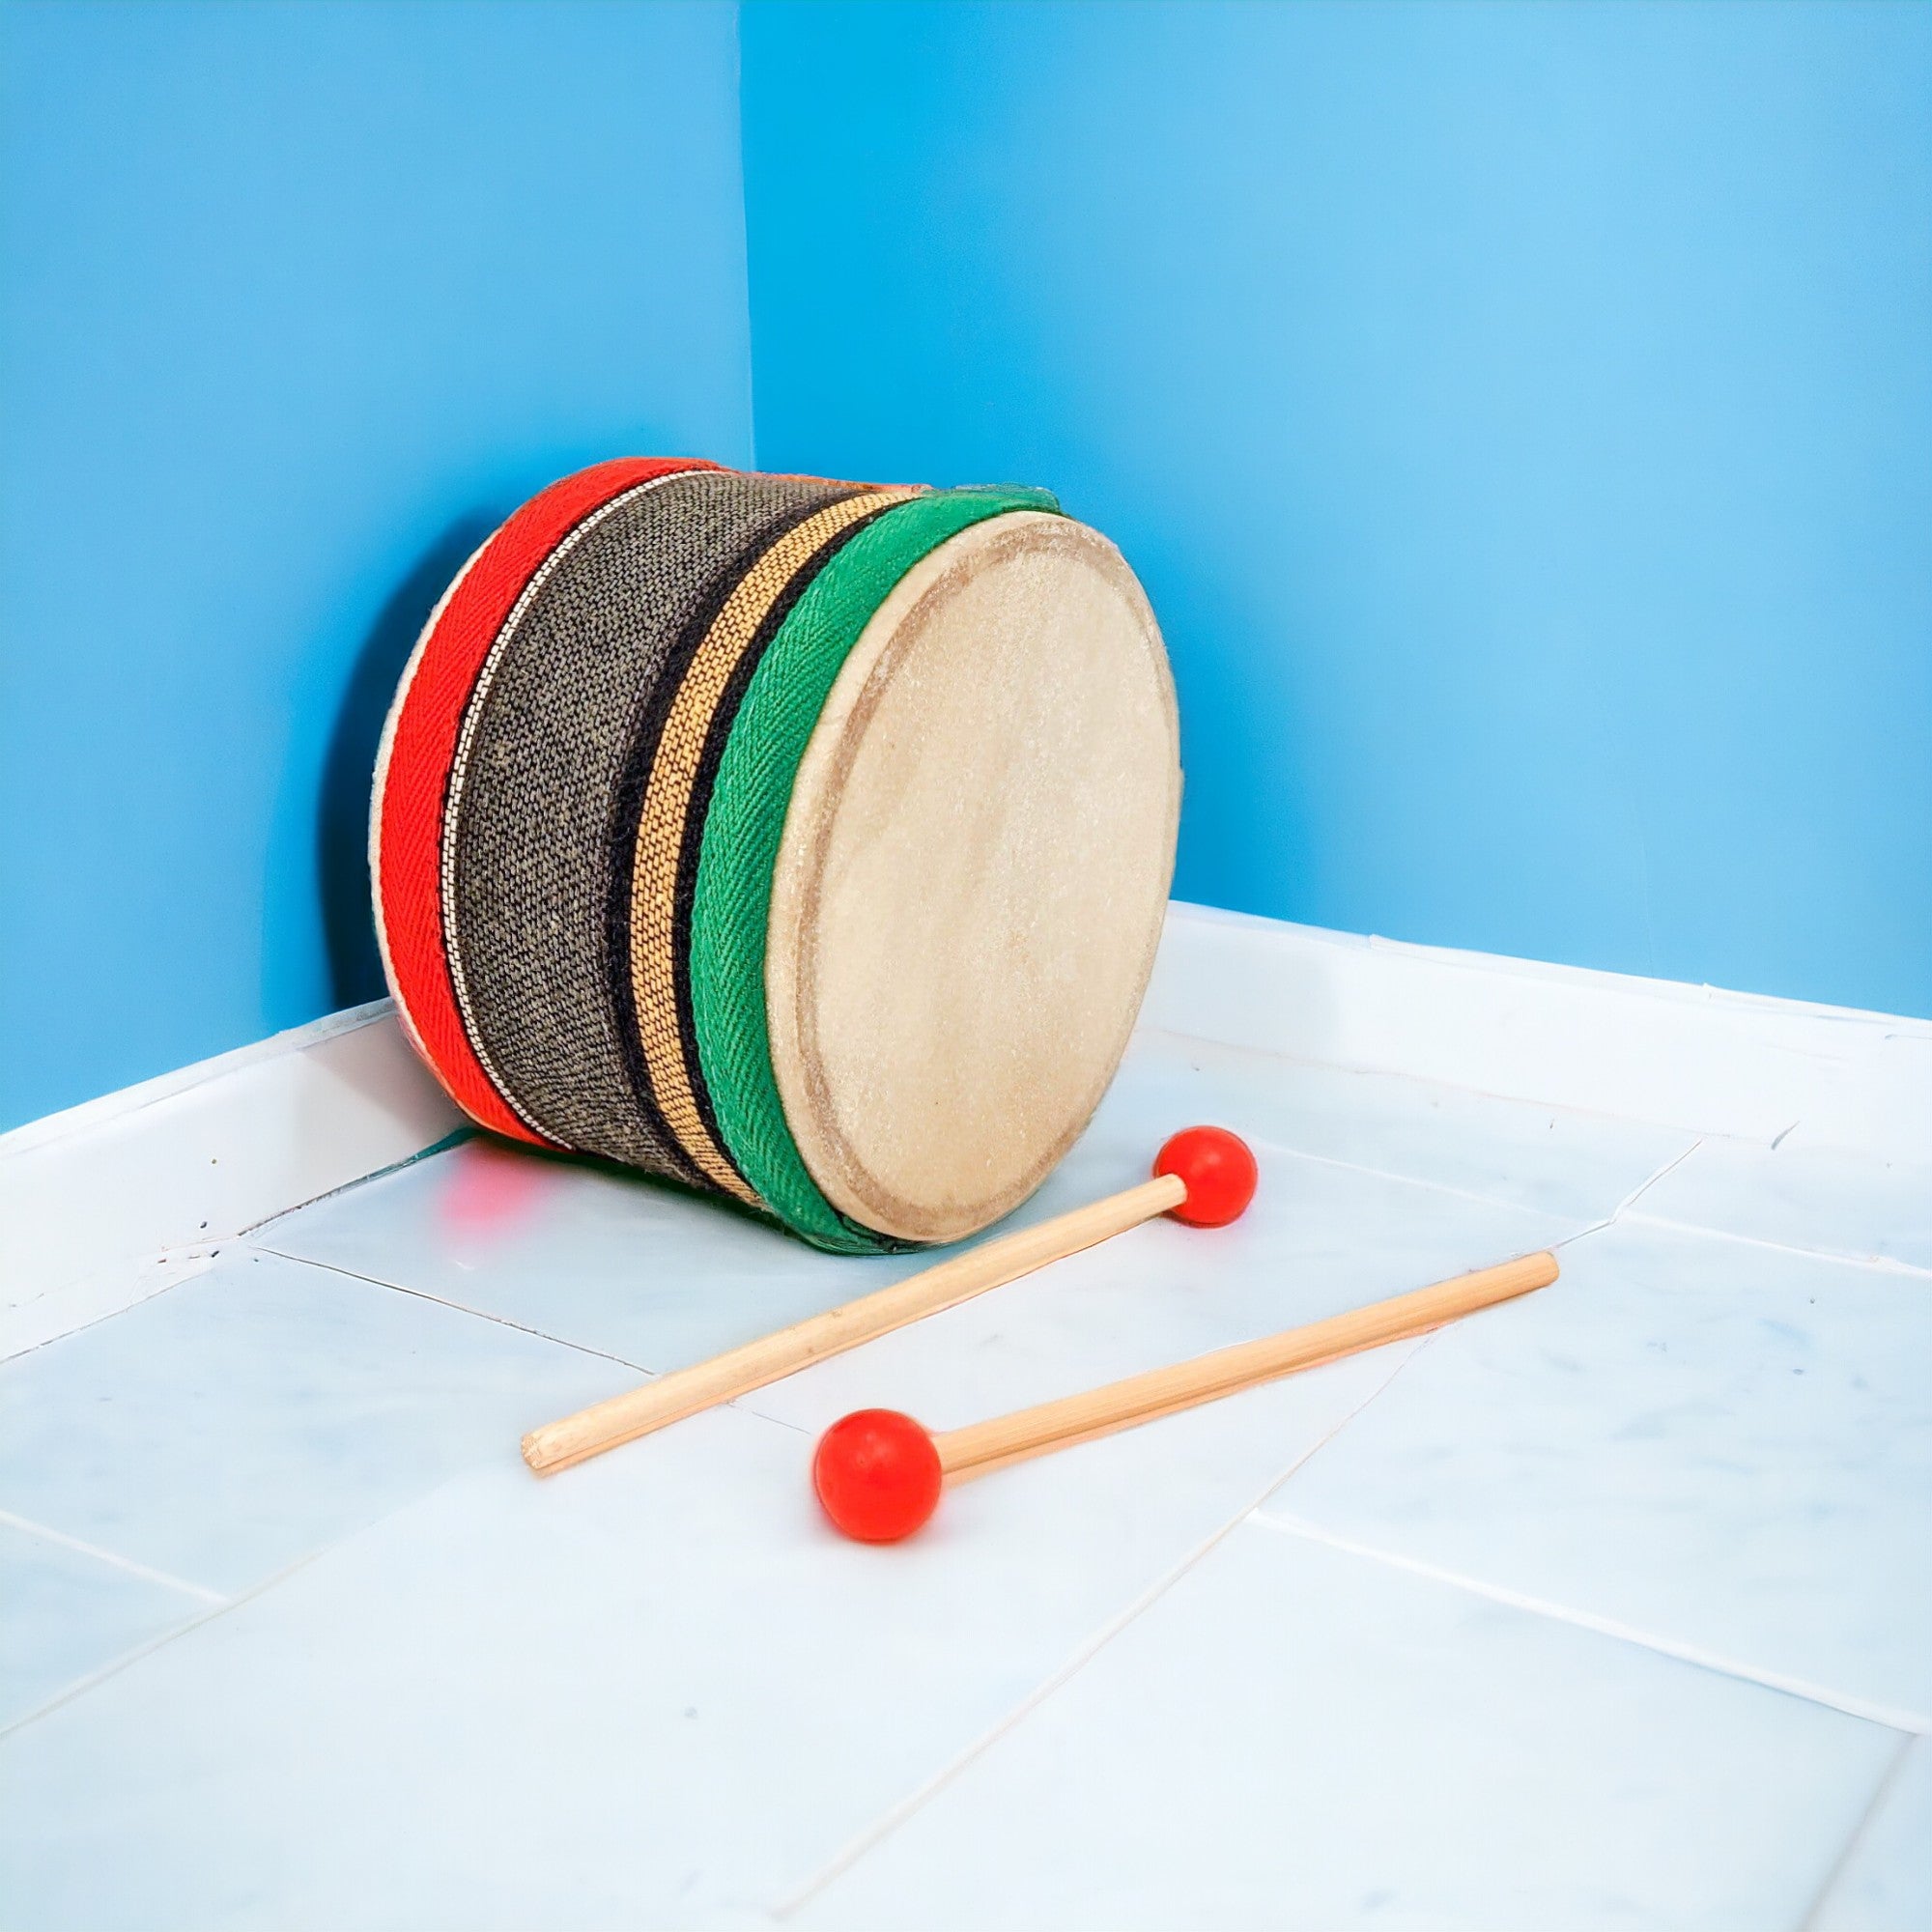 Toddler drum set | Brain Development Toy For Baby